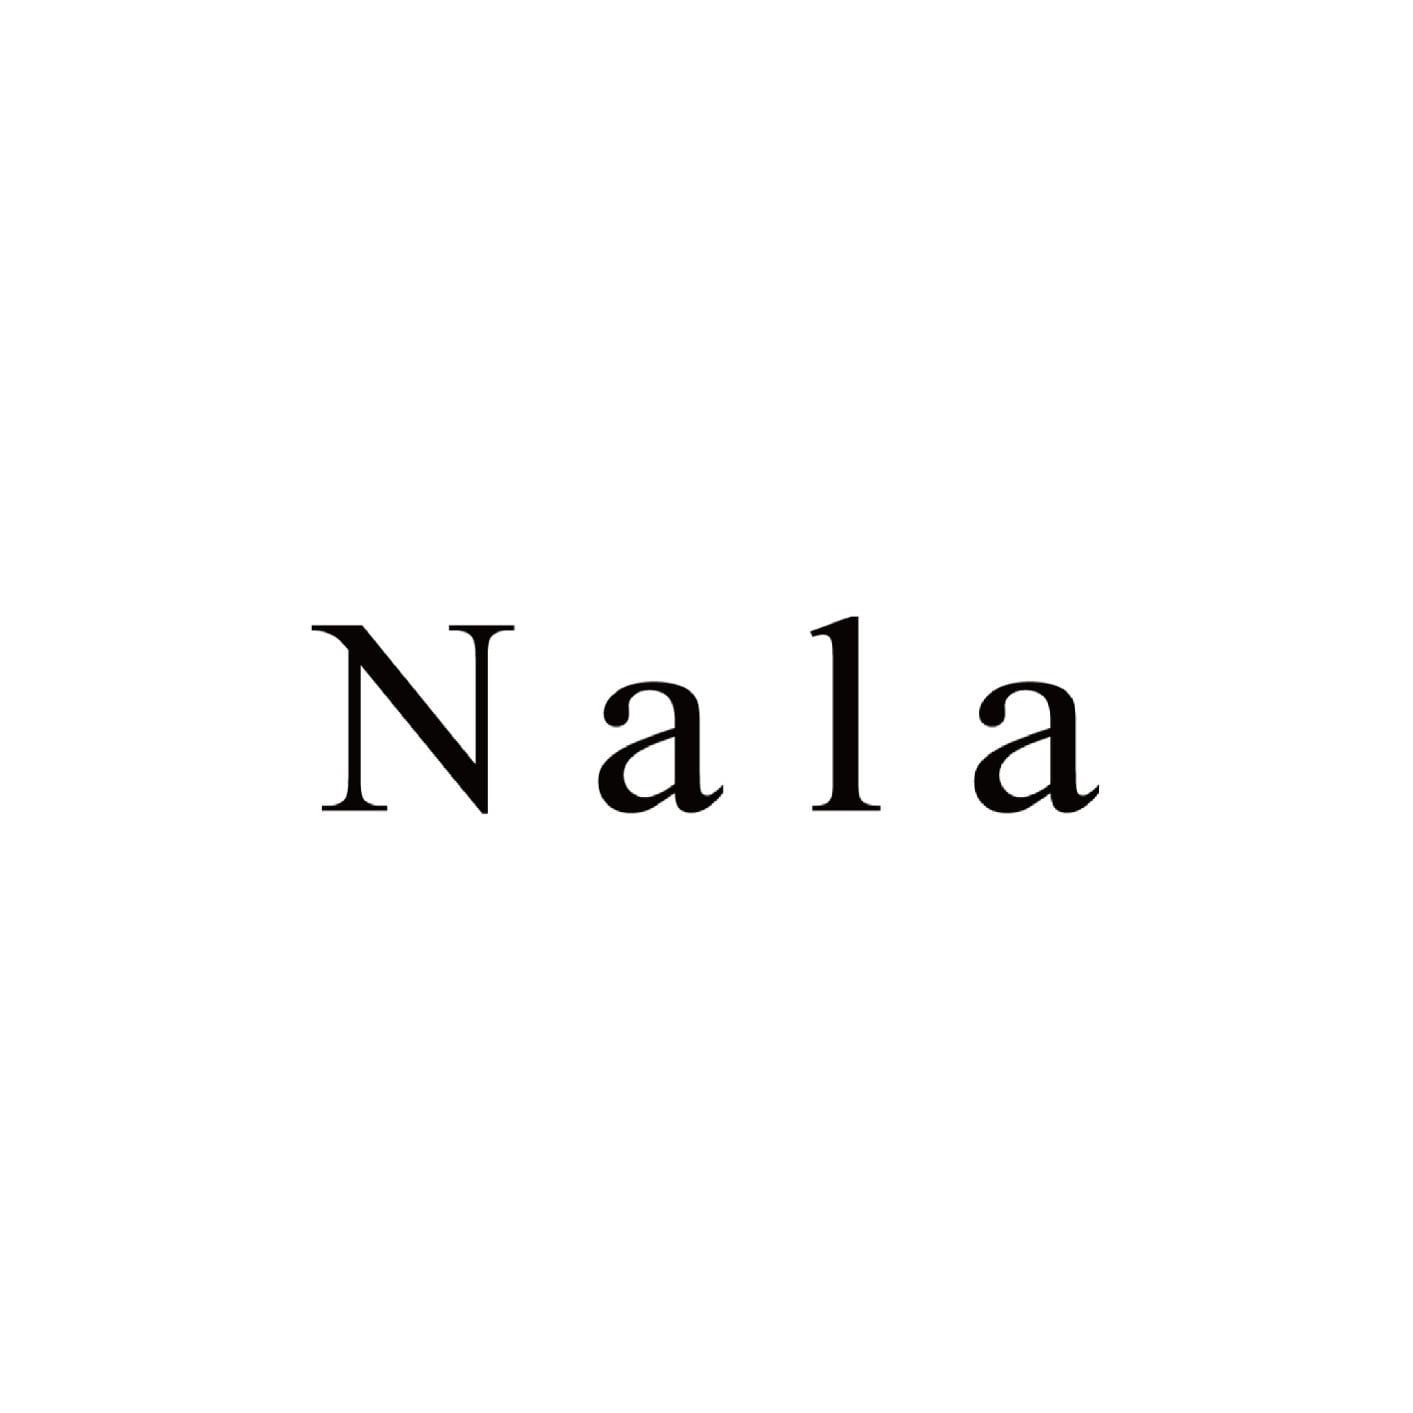 Nala